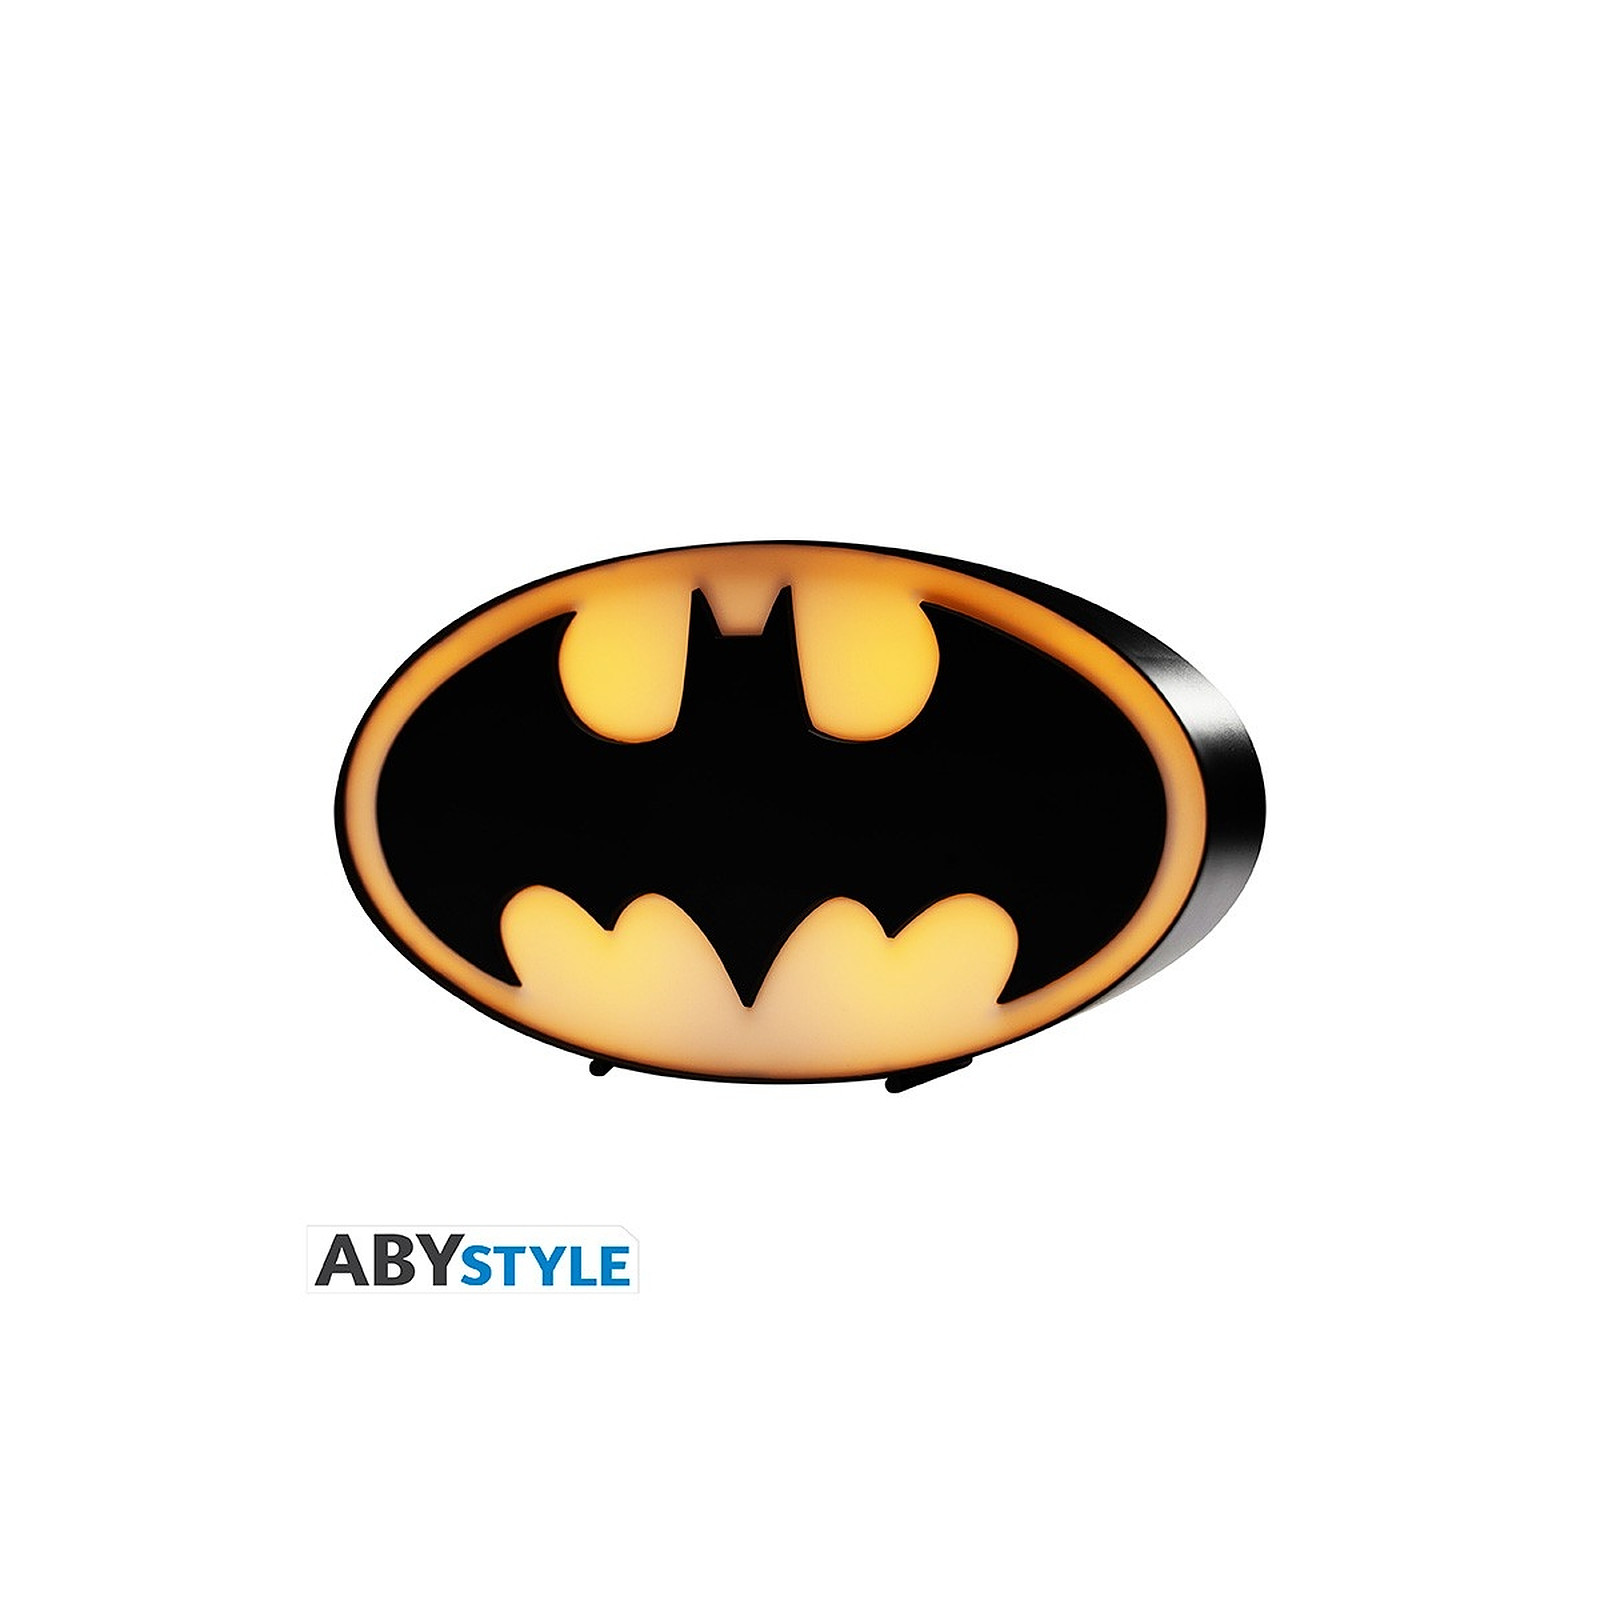 DC Comics - Lampe Batman logo - Lampe Abystyle